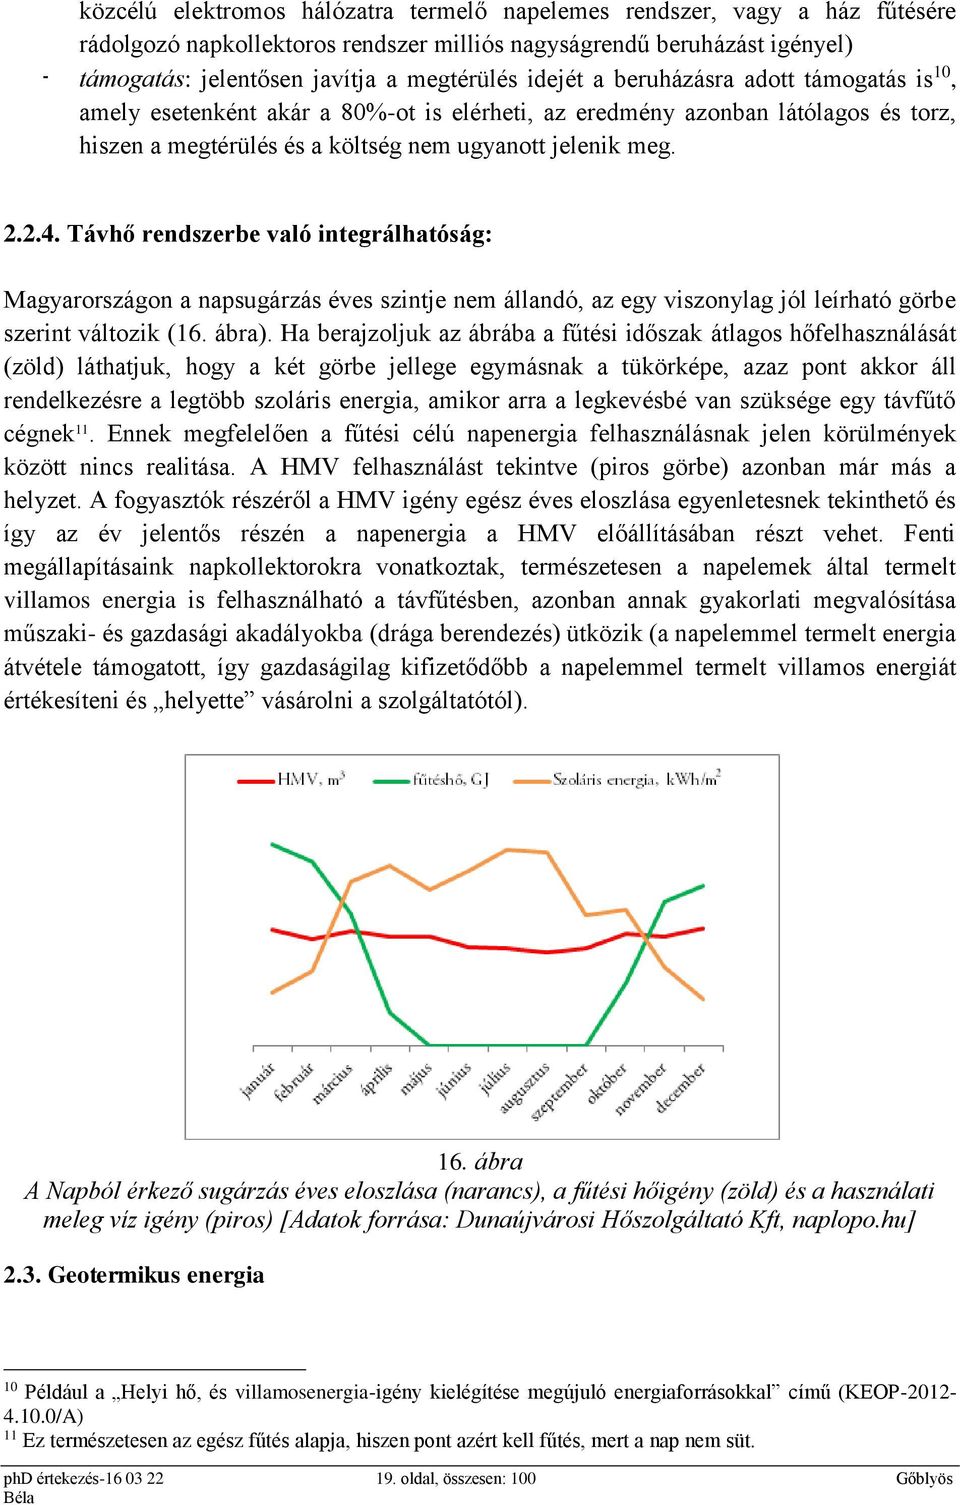 Távhő rendszerbe való integrálhatóság: Magyarországon a napsugárzás éves szintje nem állandó, az egy viszonylag jól leírható görbe szerint változik (16. ábra).